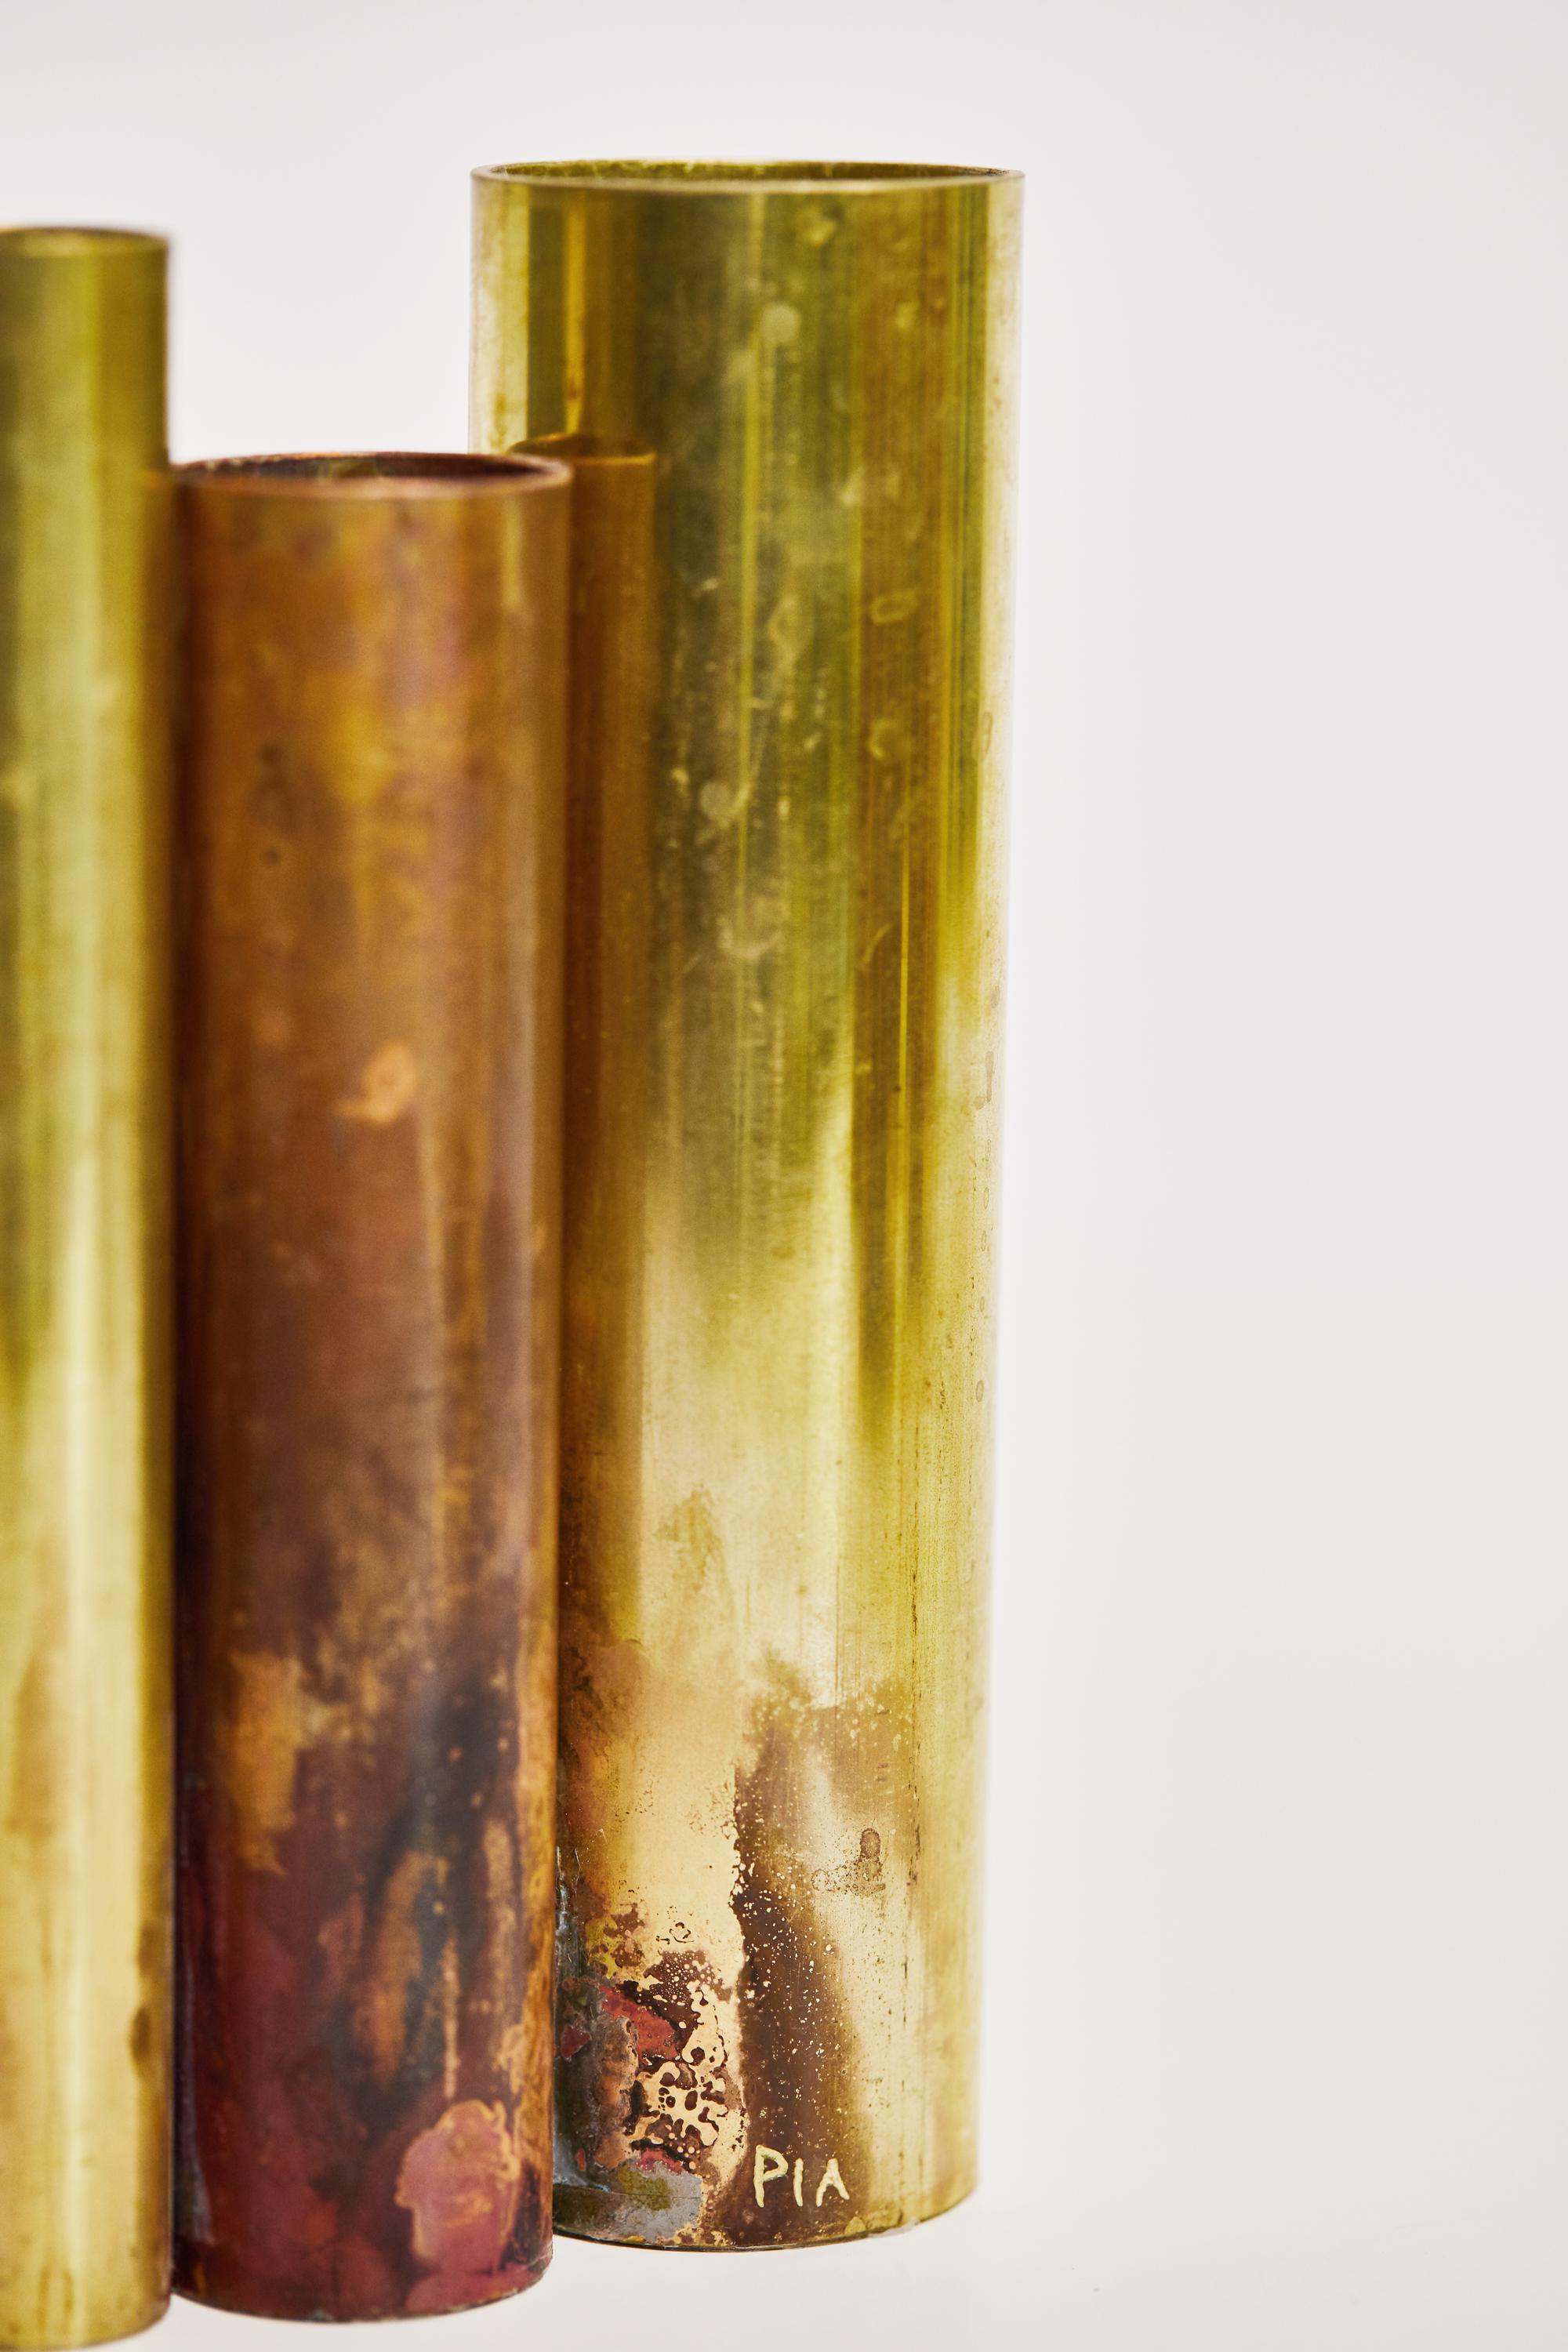 Soliflores II, Vase aus Messing, signiert von Pia Chevalier
Rohes Messing, Silberlote und Porzellan.
Abmessungen: ø 2,6 bis 3,8 x 14 cm H 19 bis 22 cm
Jede einzelne ist einzigartig.

Pia Chevalier ist eine französische zeitgenössische